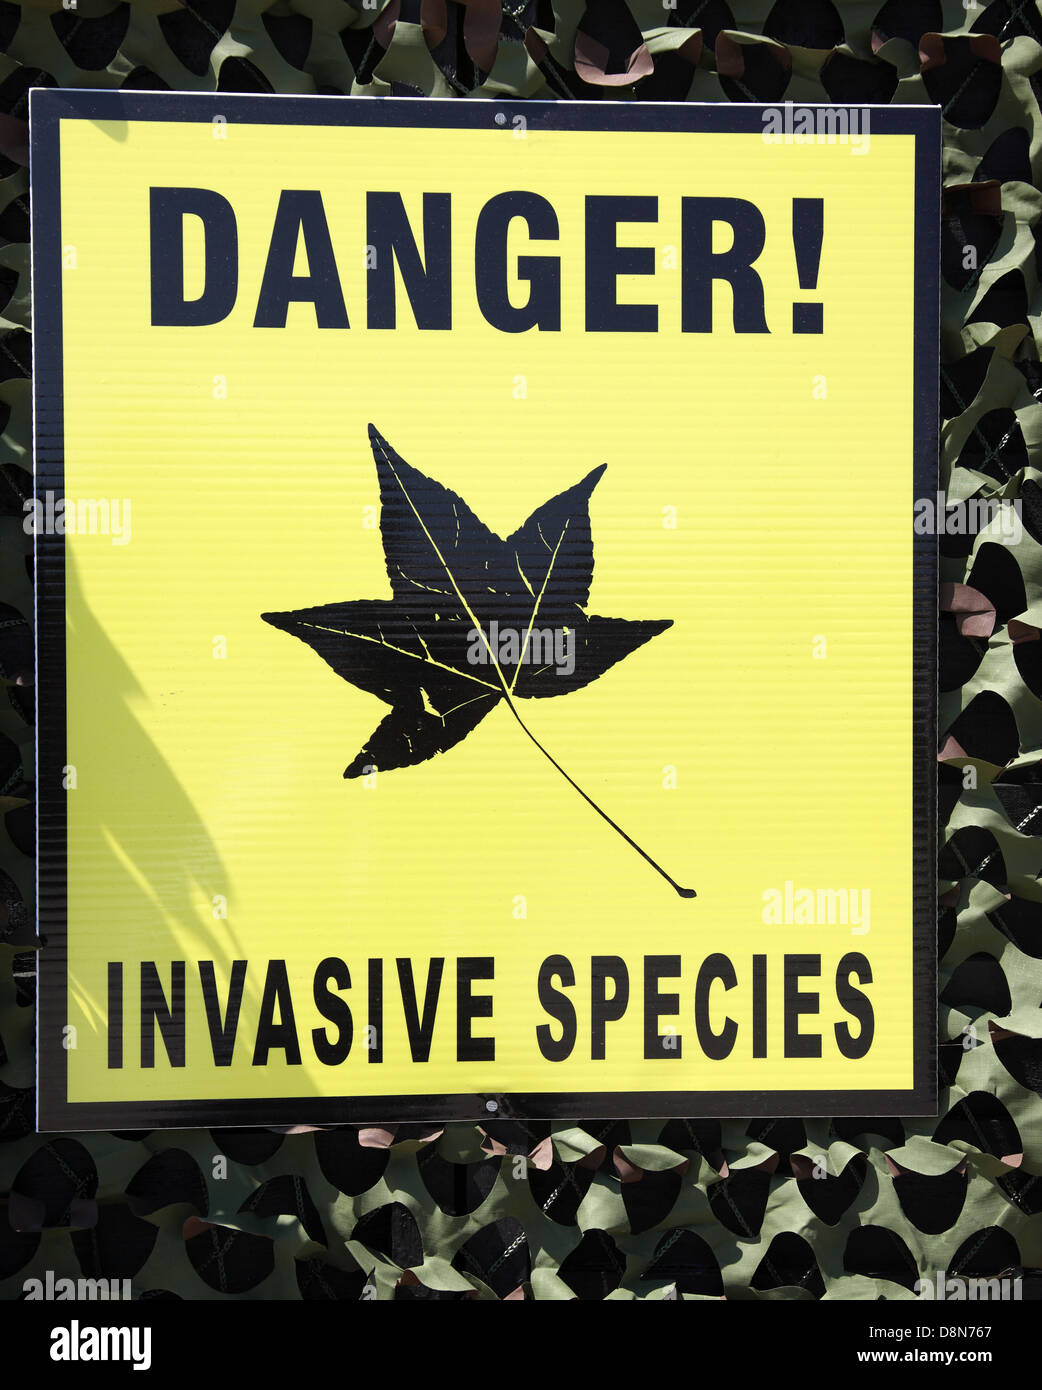 Danger Invasive Species sign Stock Photo